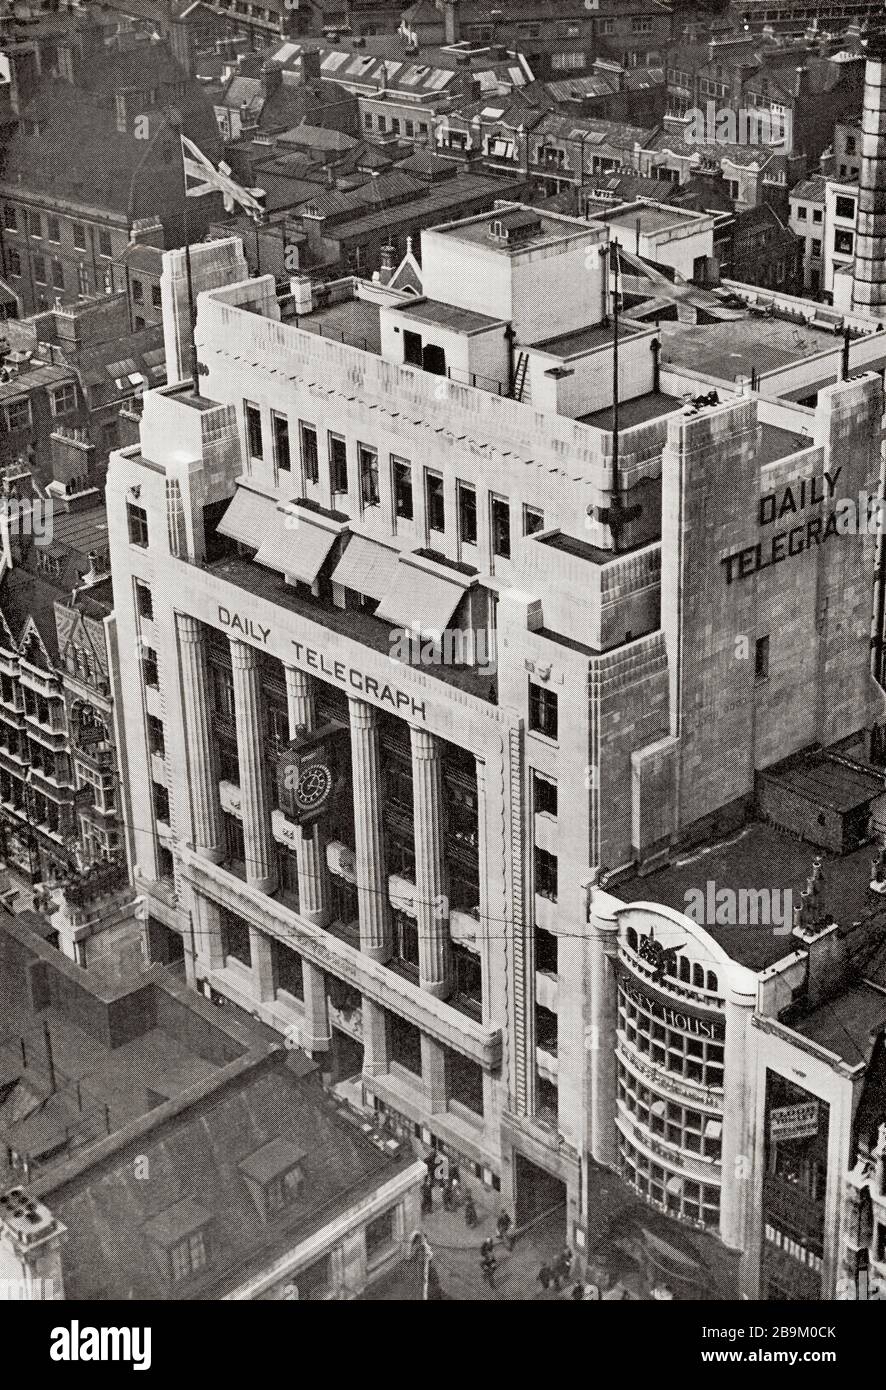 The Daily Telegraph journal Building, Fleet Street, Londres, Angleterre. De l'Esprit de Londres, publié 1935 Banque D'Images